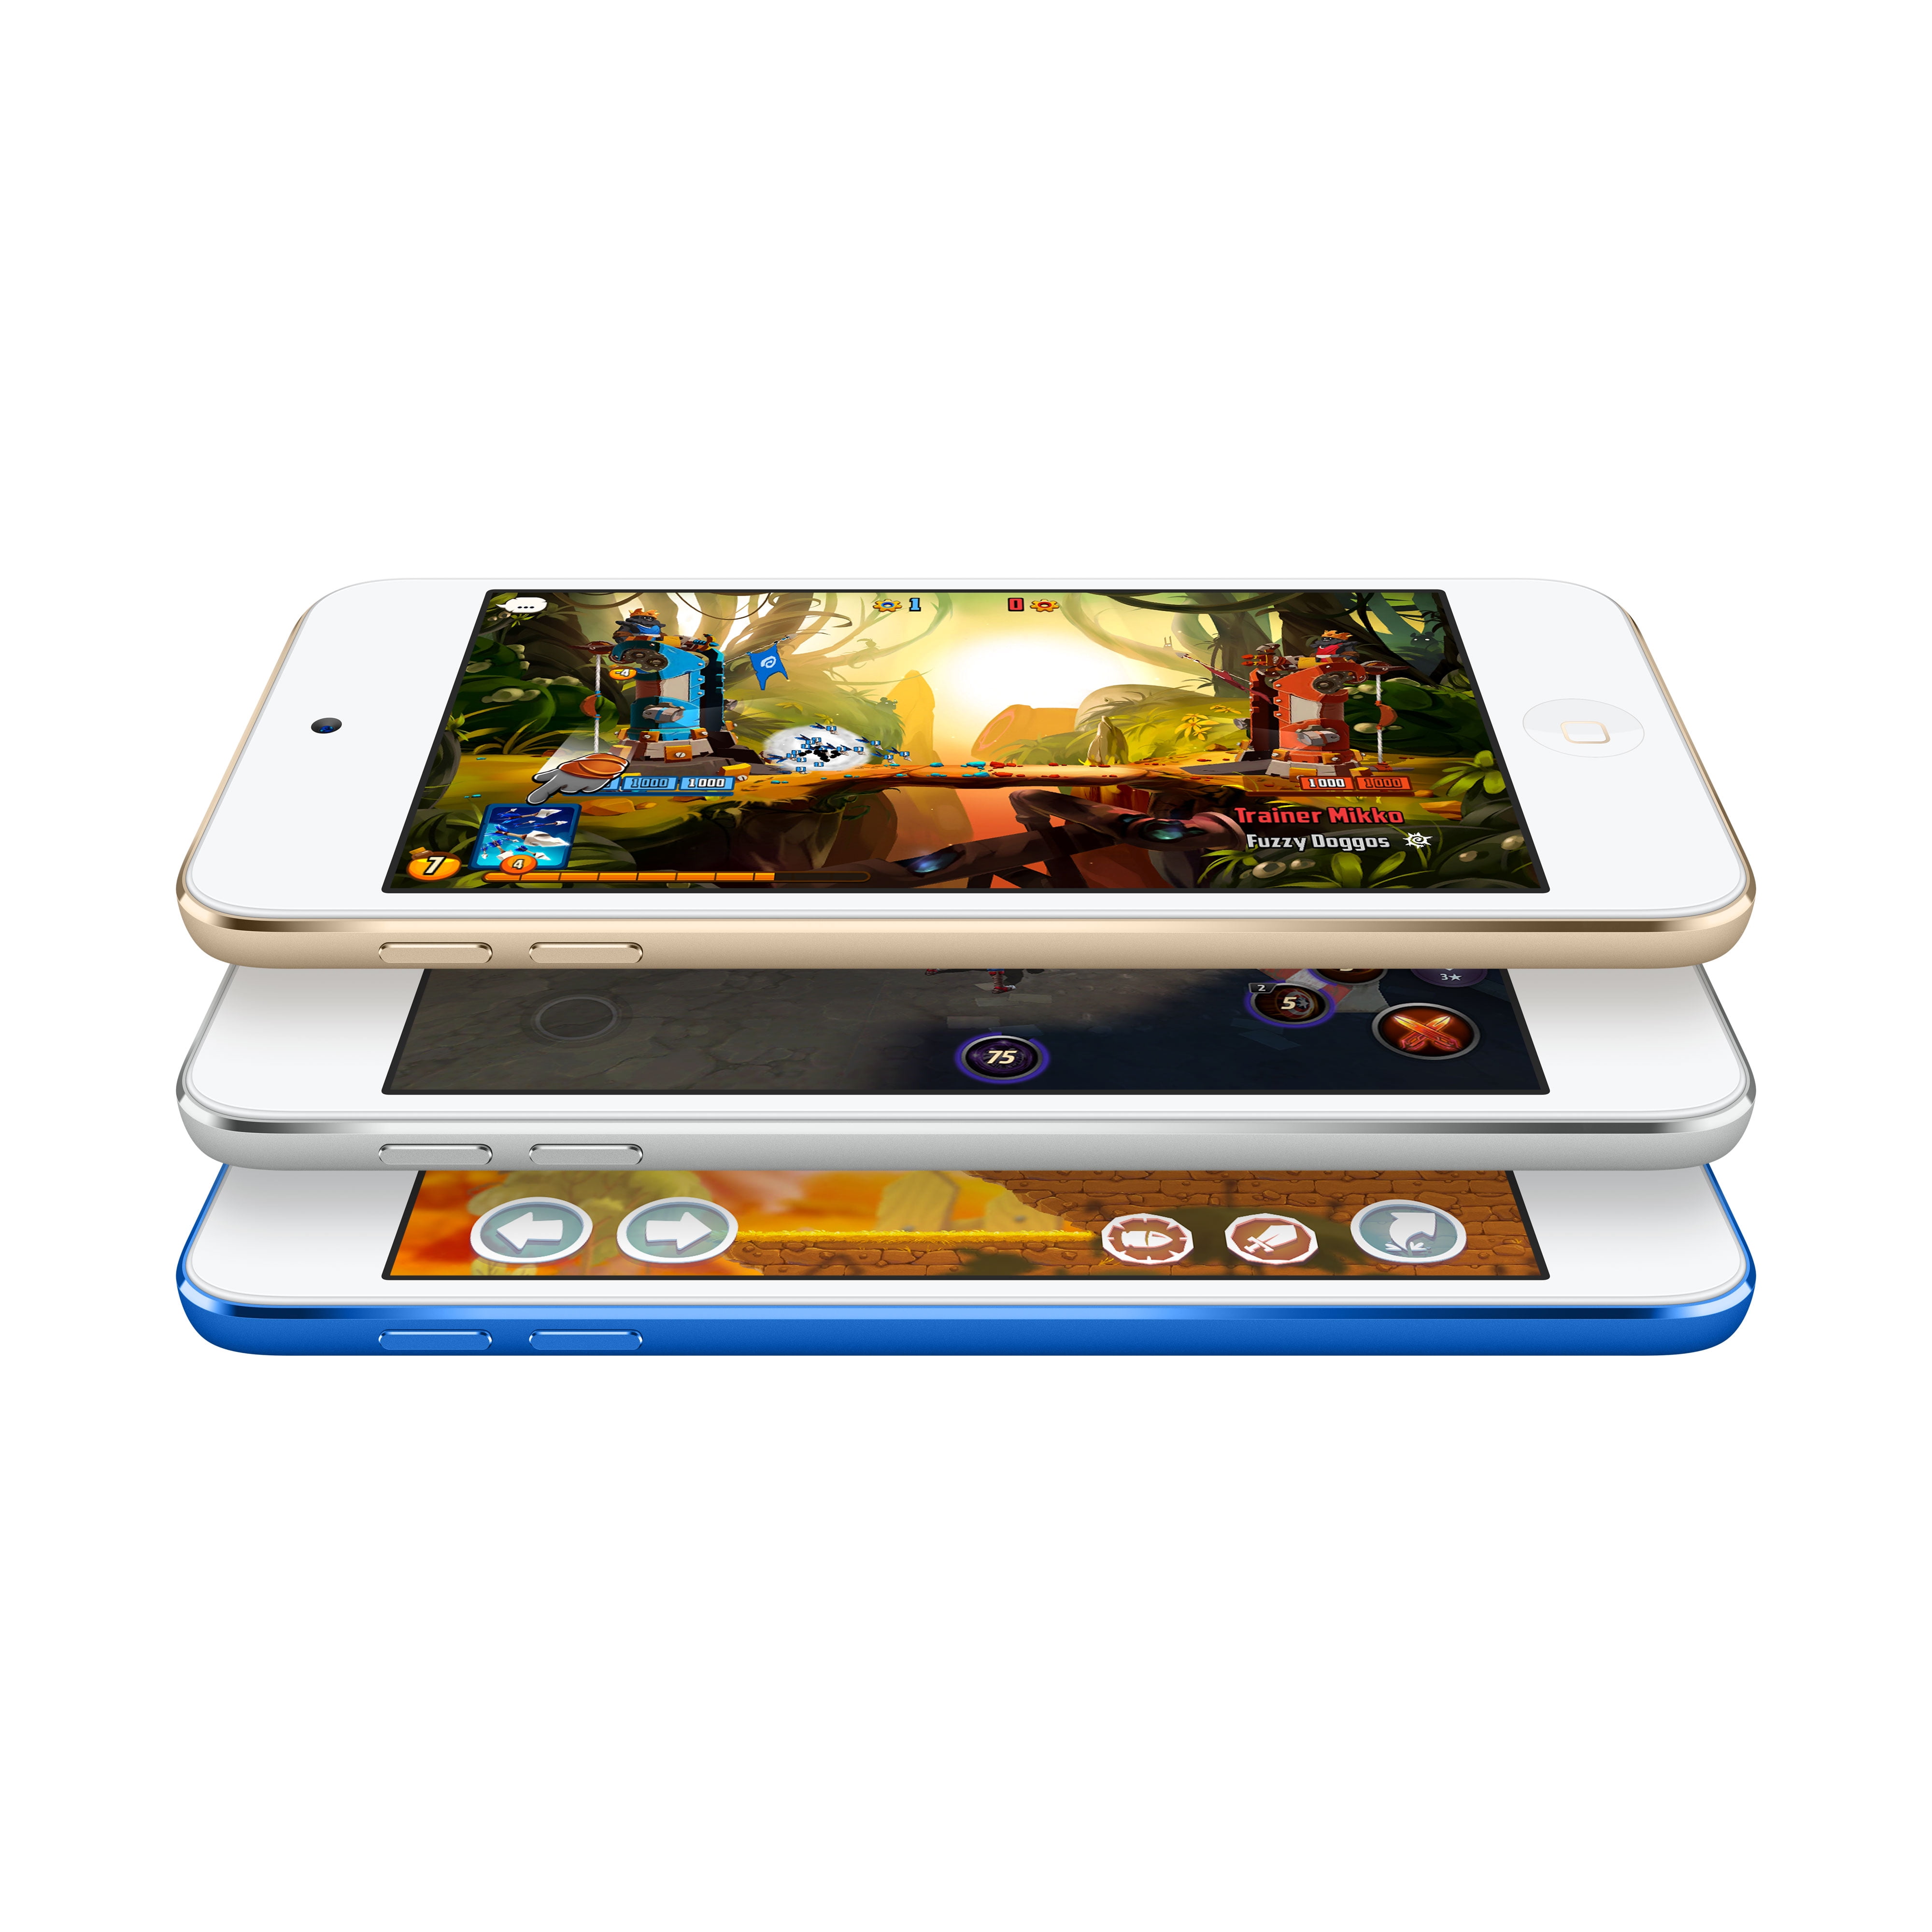 オーディオ機器 ポータブルプレーヤー Apple iPod touch 7th Generation 32GB - Blue (New Model) - Walmart.com